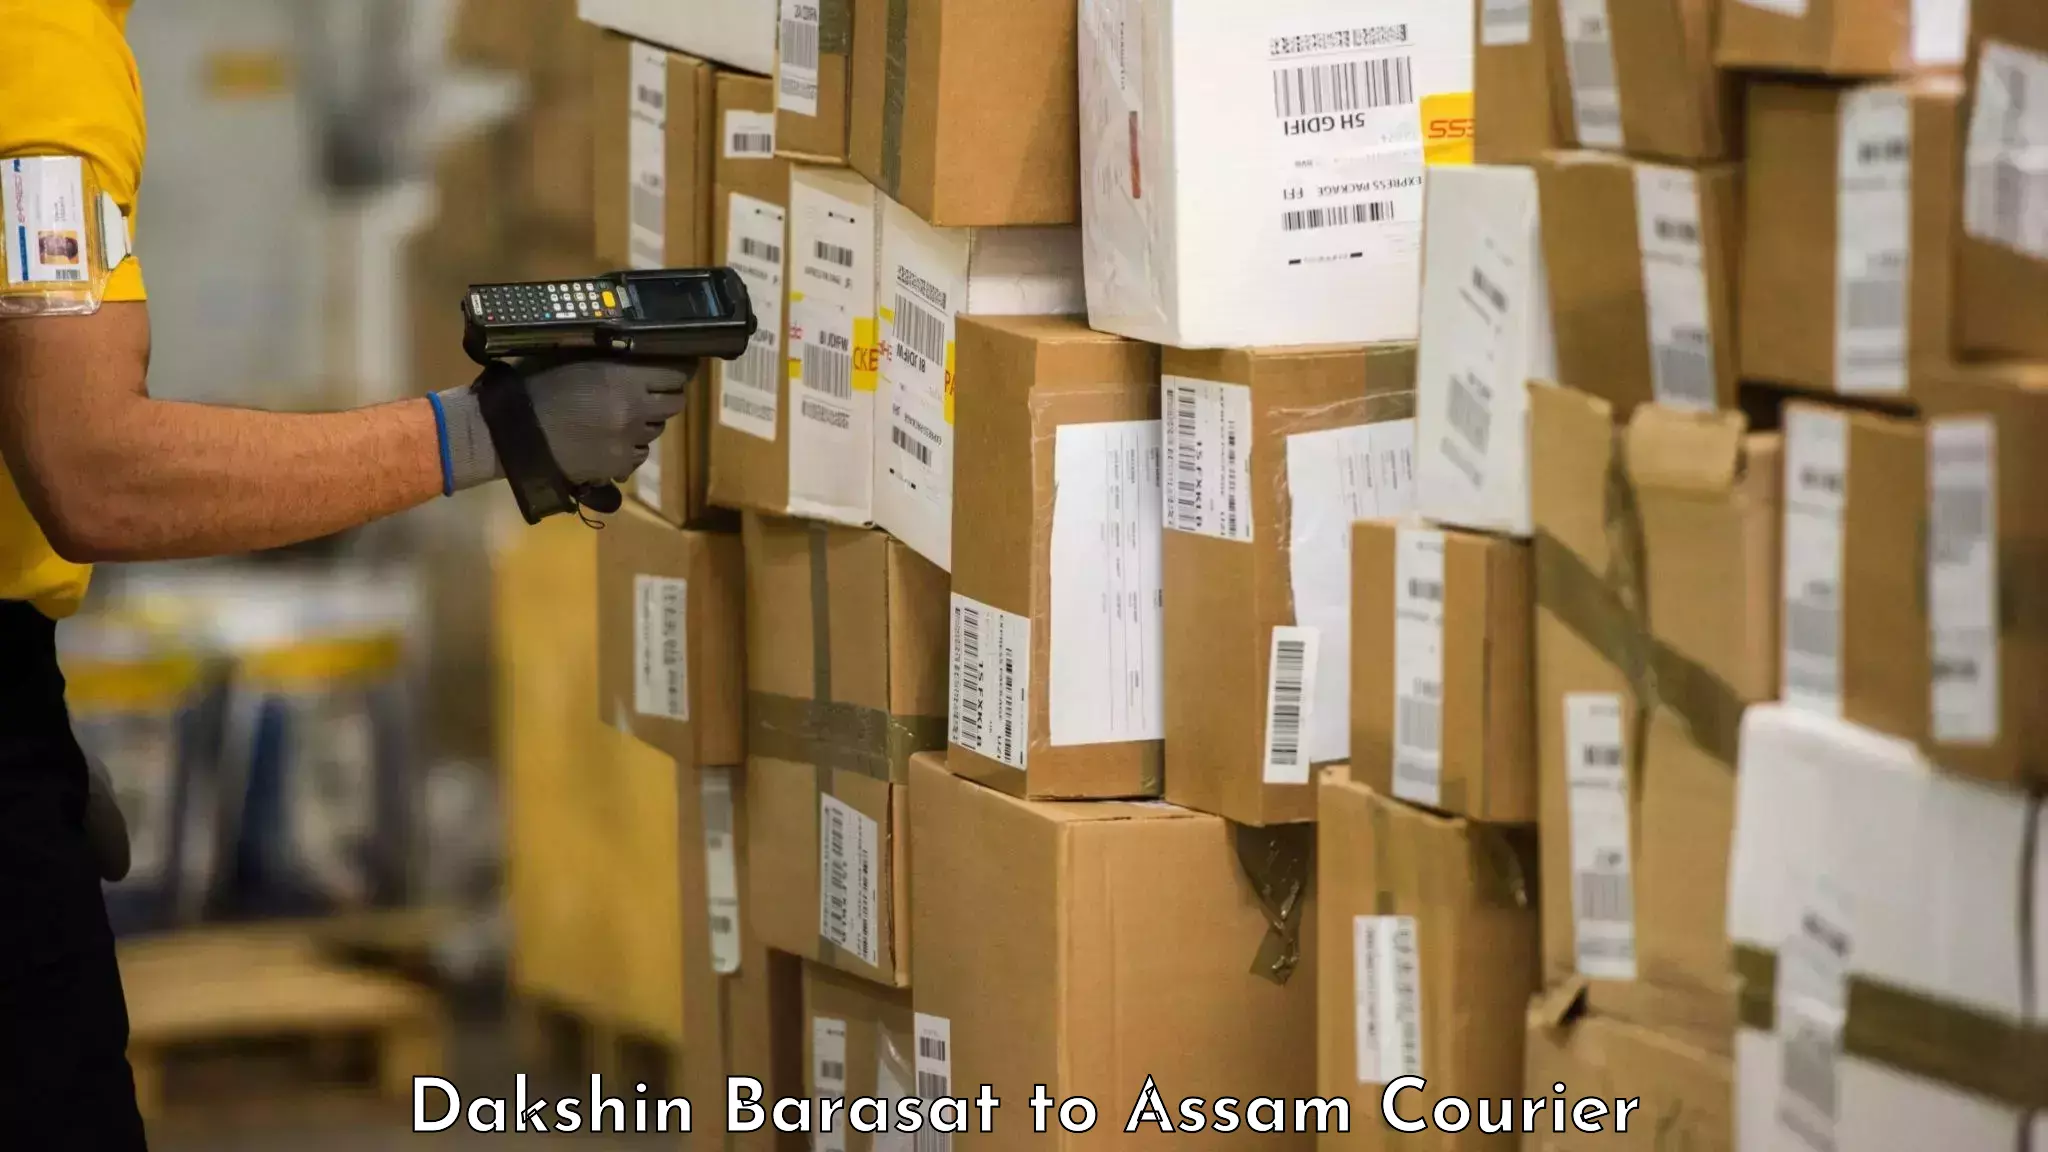 Baggage shipping schedule Dakshin Barasat to Dhing Town